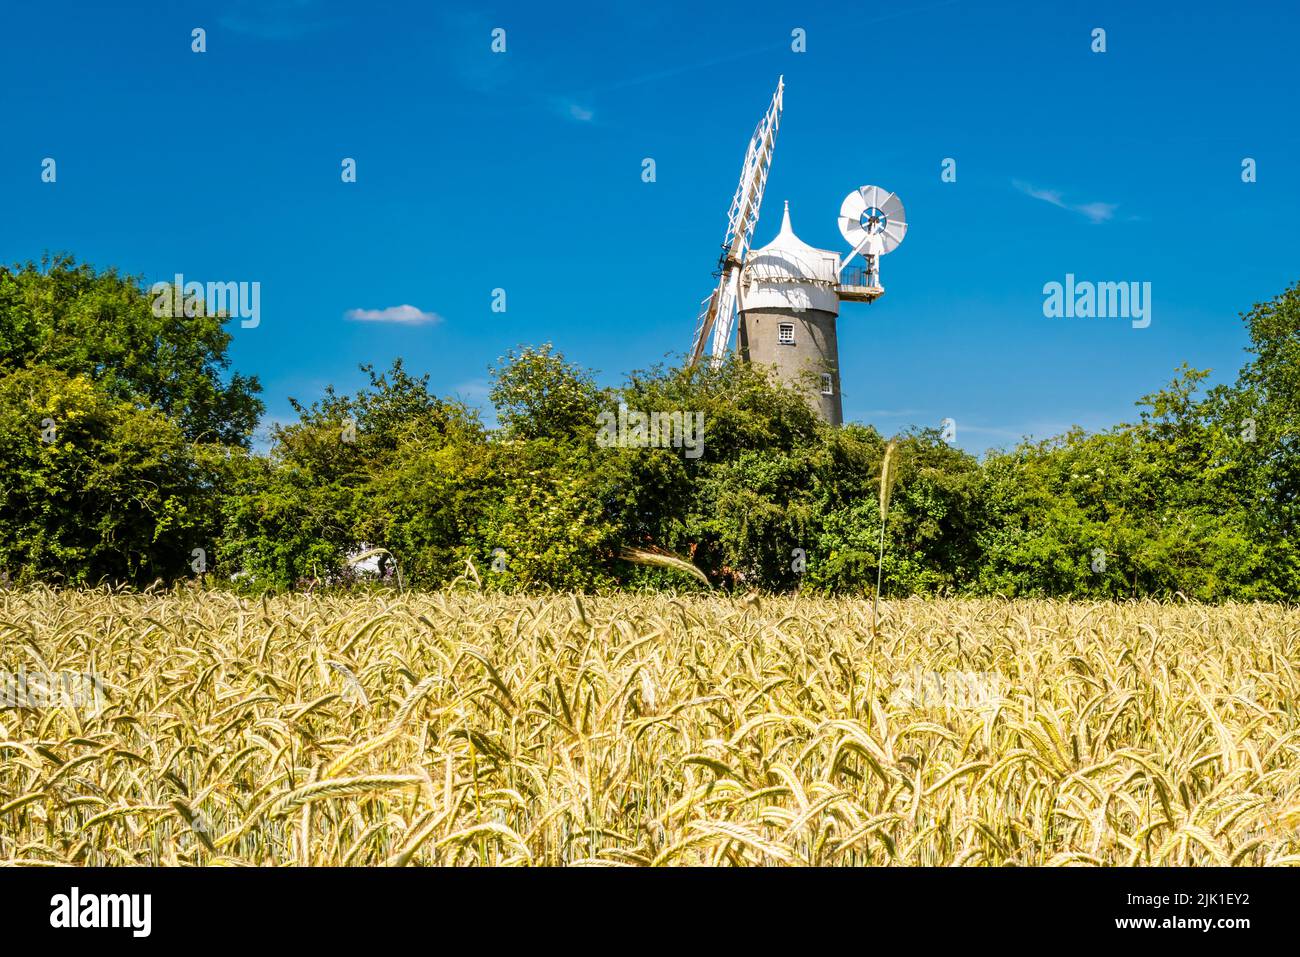 Bircham windmill in Norfolk seen across a ripening field of grain. Stock Photo